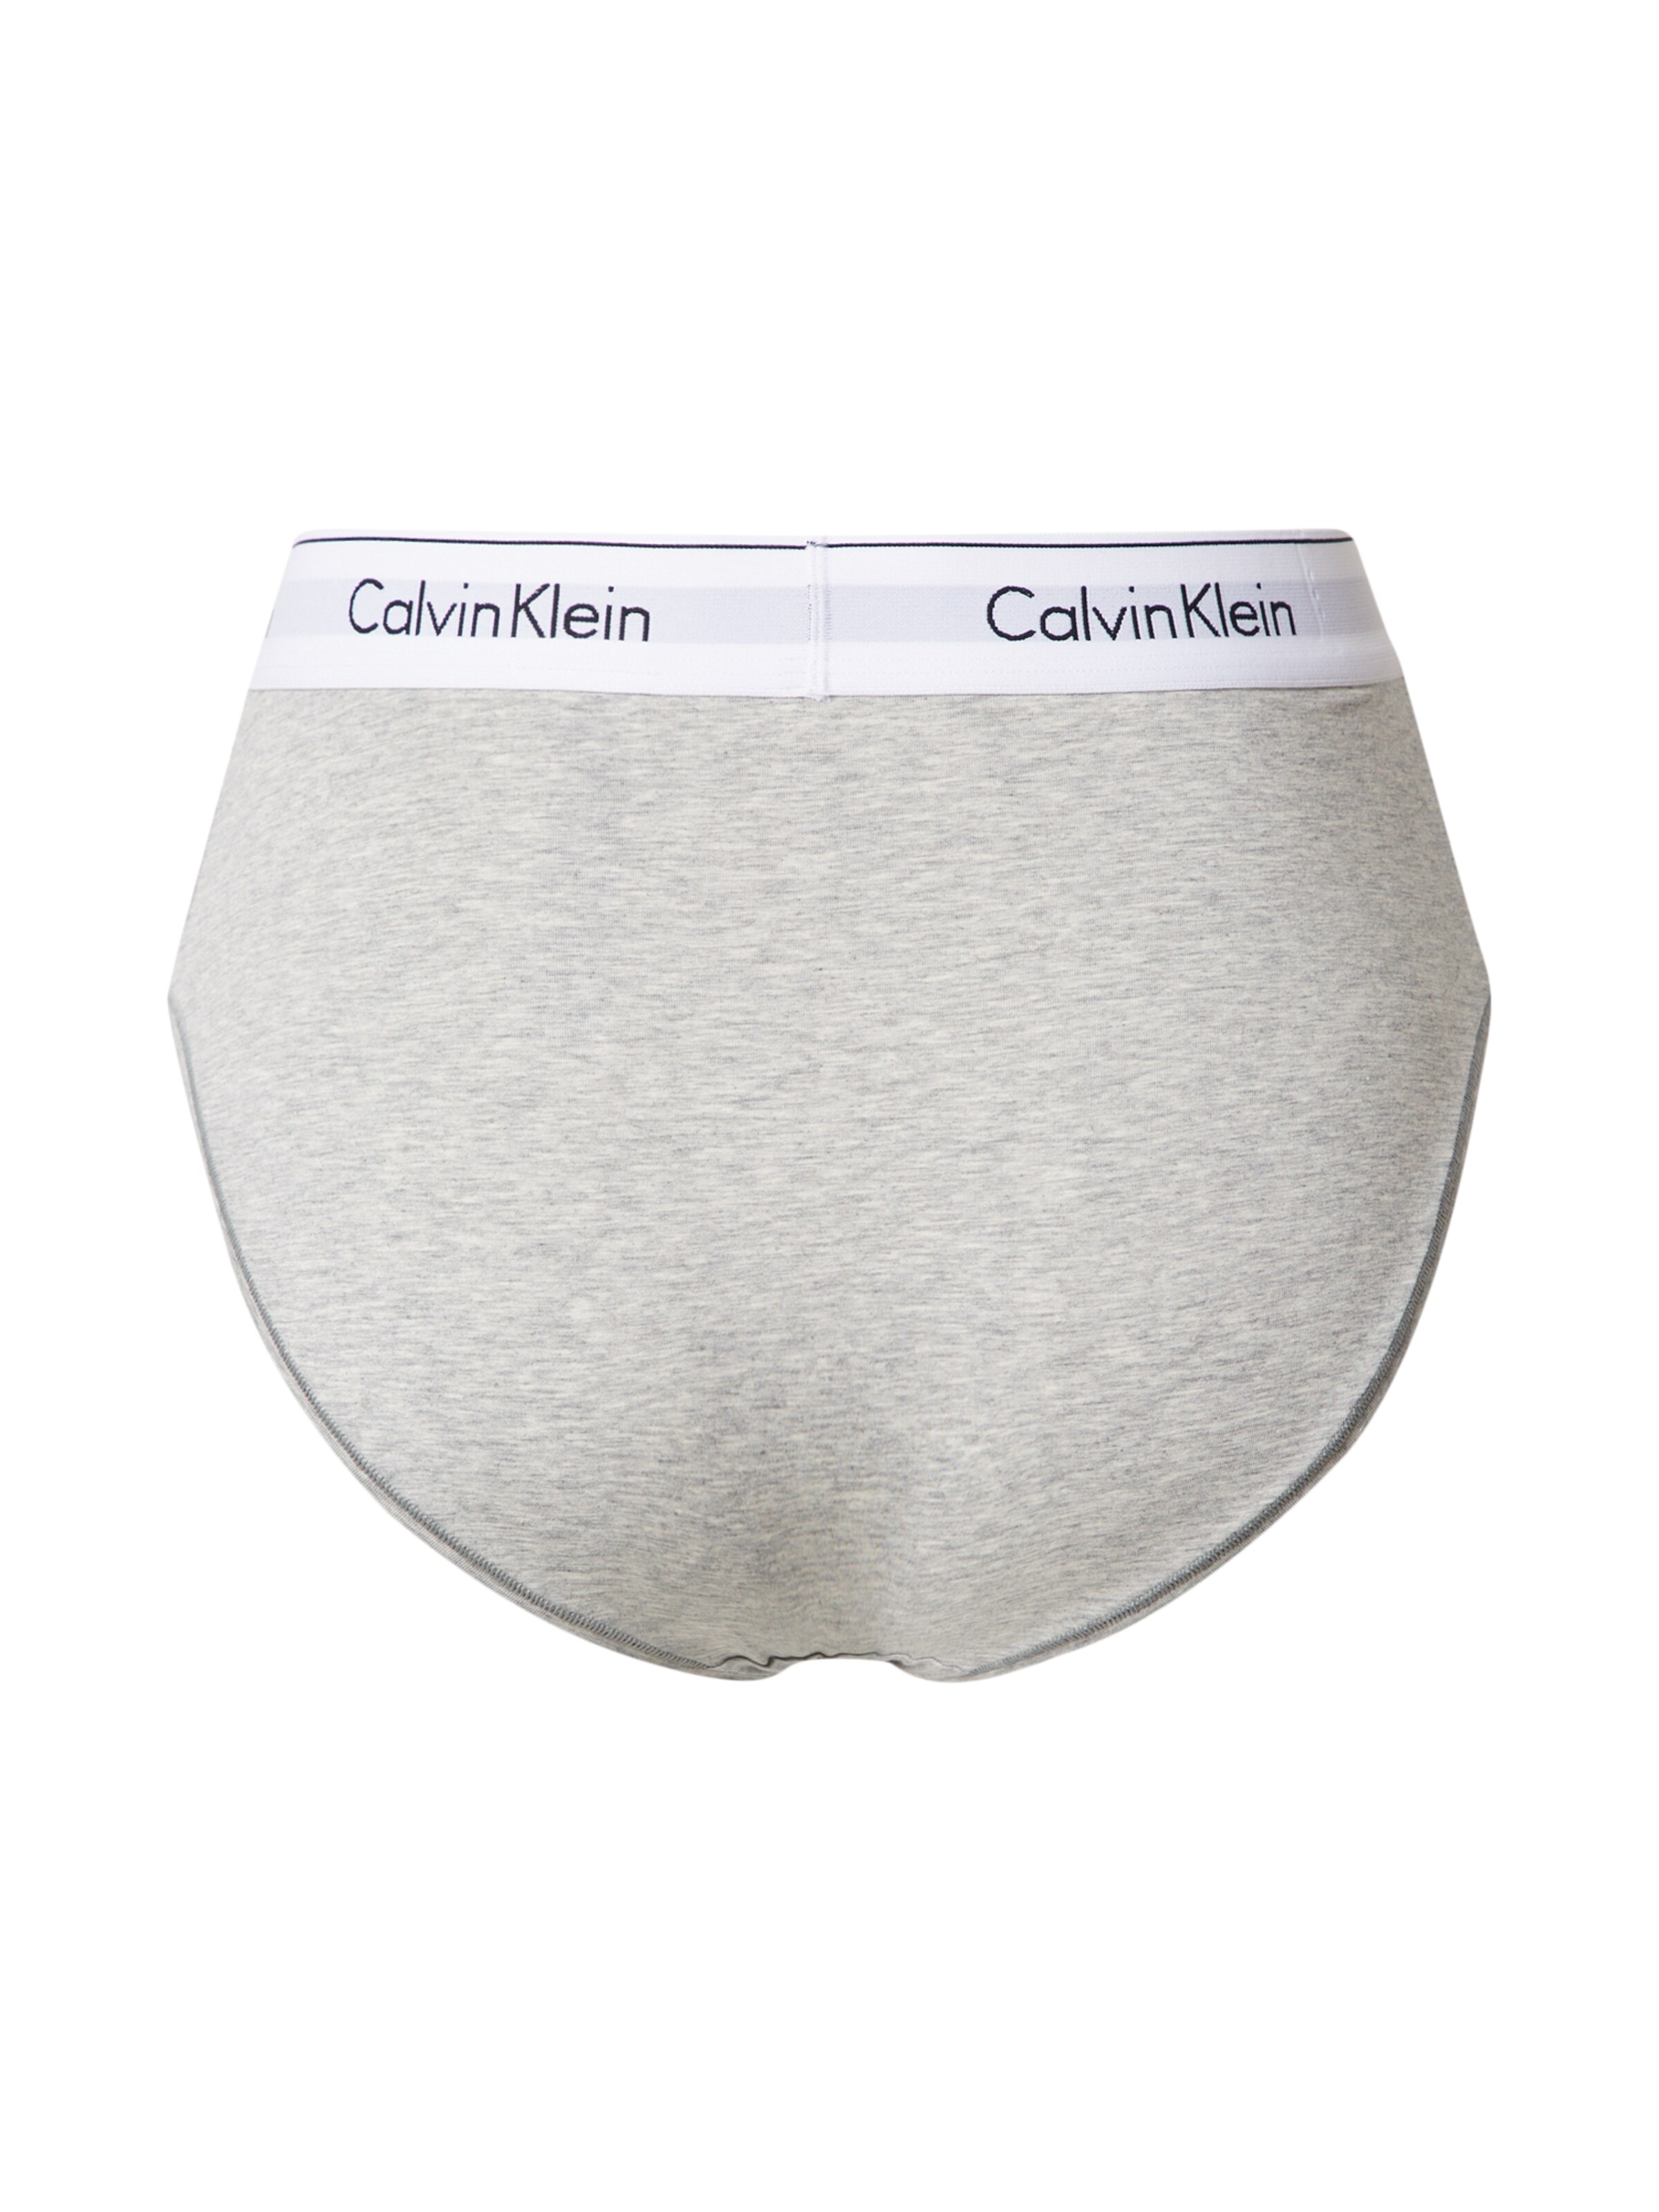 Calvin Klein Underwear Slip MATERNITY in Grau 